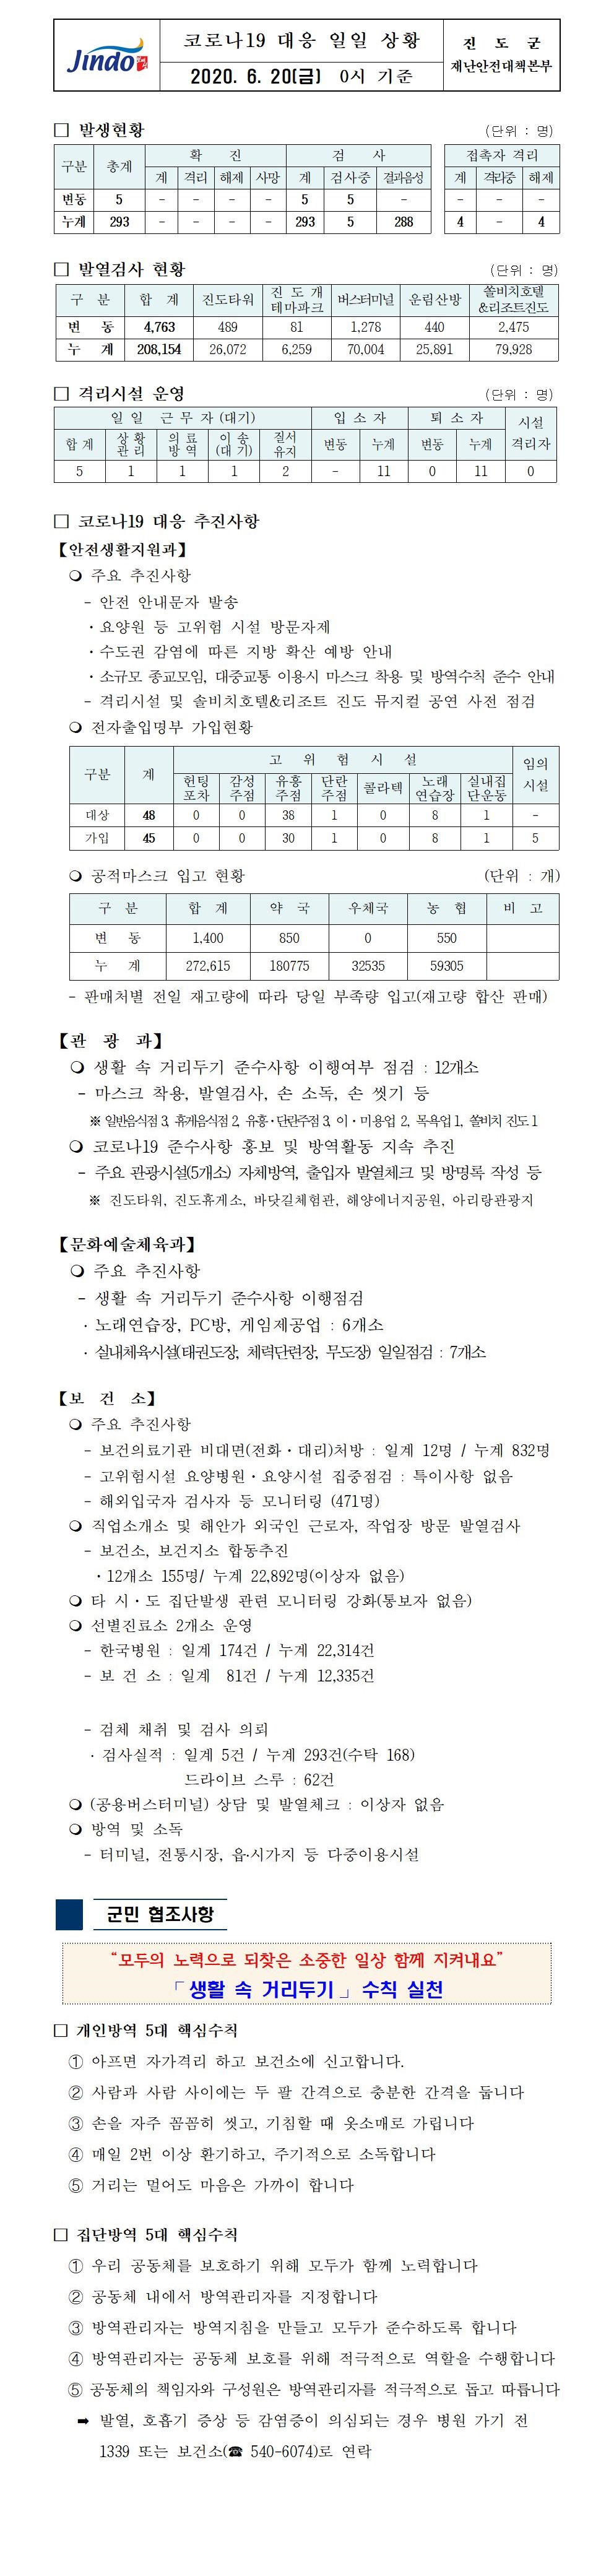 코로나19대응 일일 상황 보고(6월 20일 0시 기준) 첨부#1